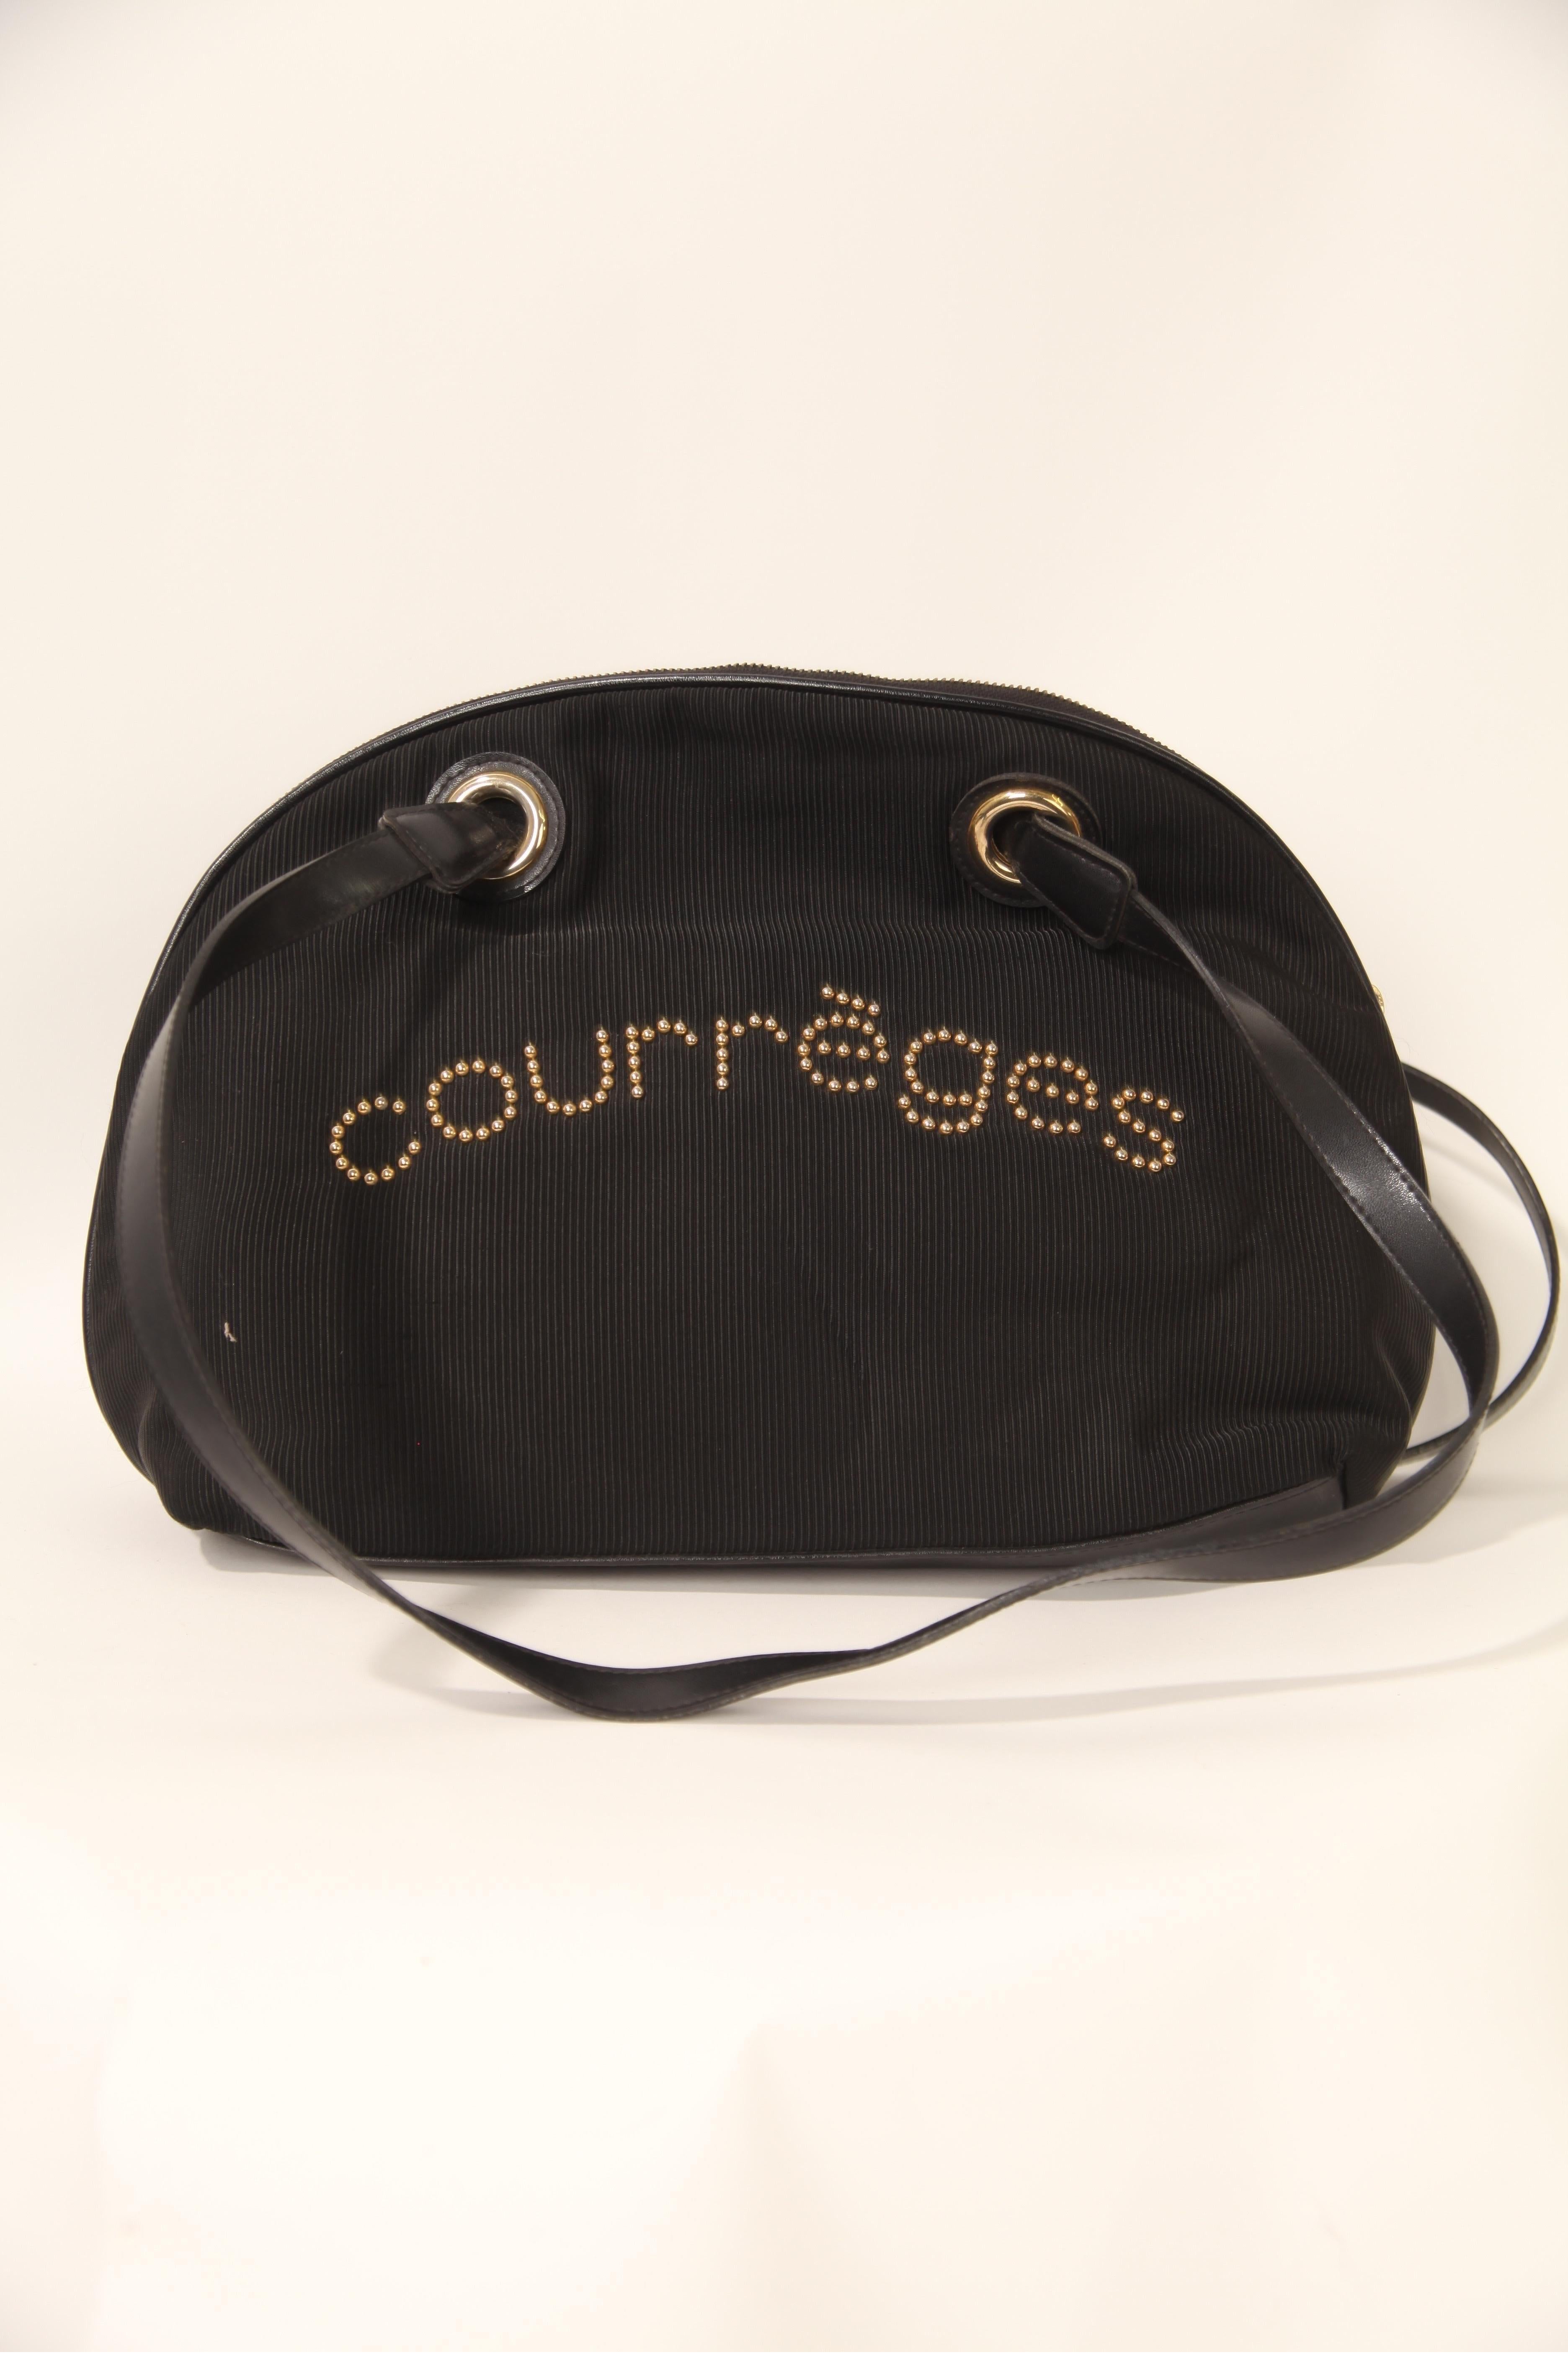 Courrèges, maison de couture française fondée par André Courrèges, était connue pour ses créations futuristes et avant-gardistes dans les années 1960 et 1970. Ce sac Demi Lune de Courrèges est un classique de la maison de couture. Il s'agit d'un sac